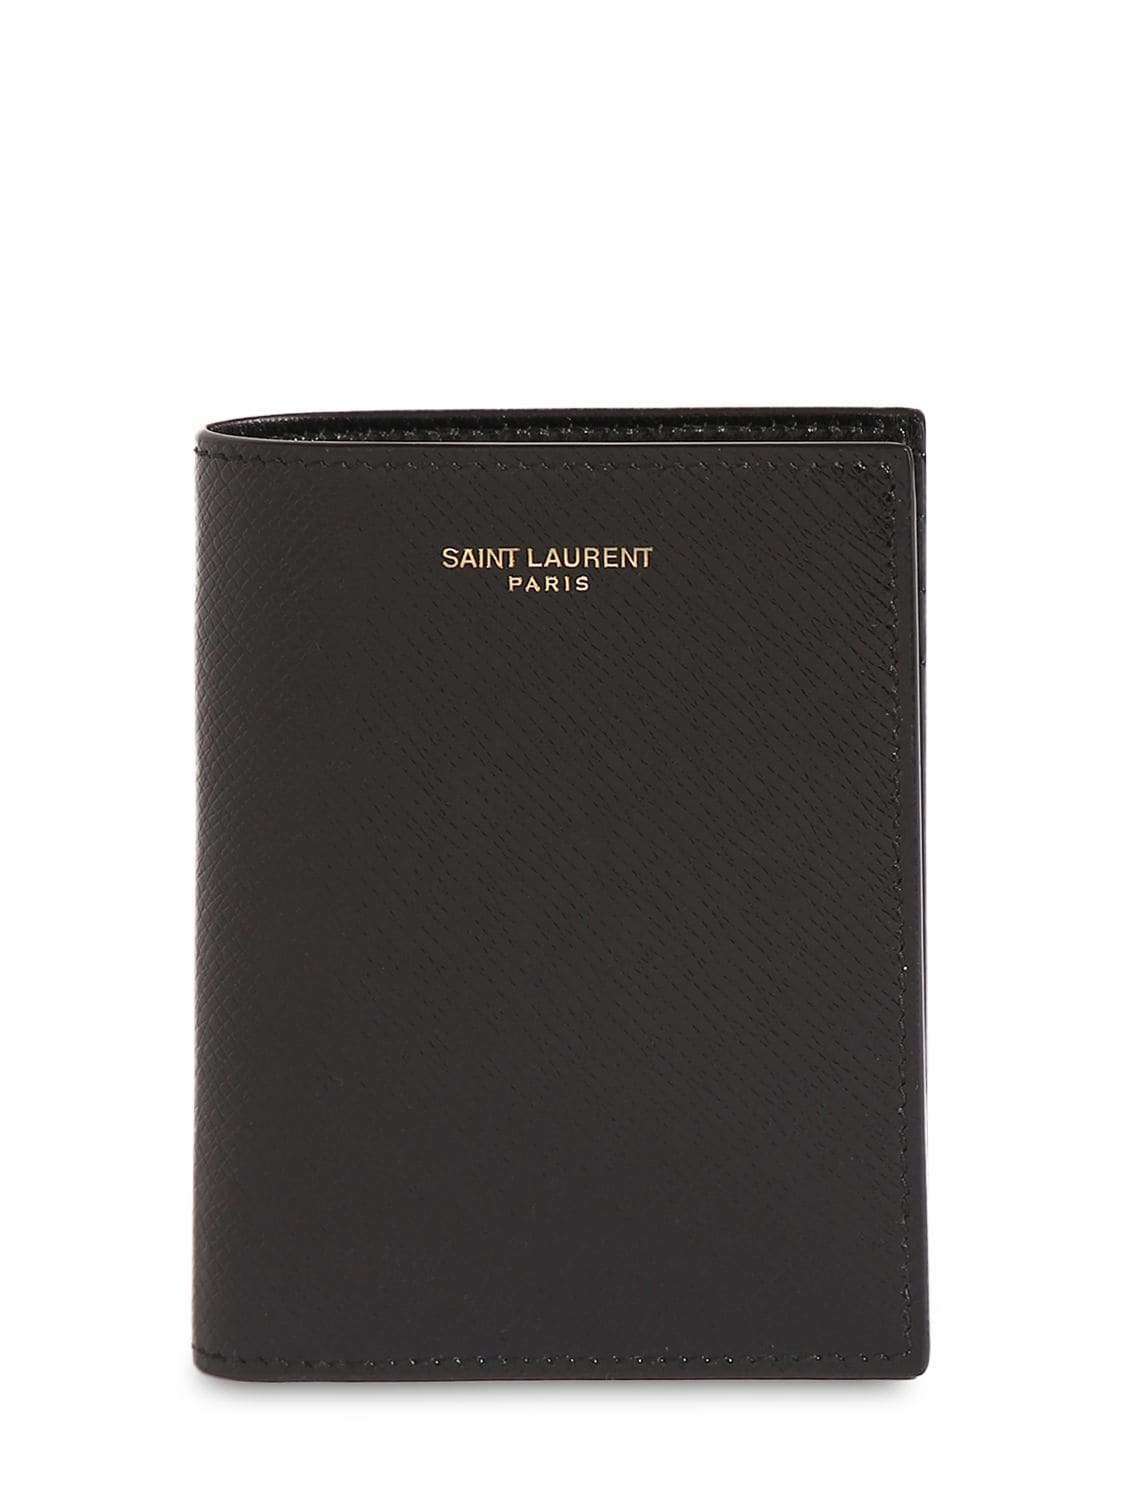 Saint Laurent Leather Card Wallet – MEN > ACCESSORIES > WALLETS